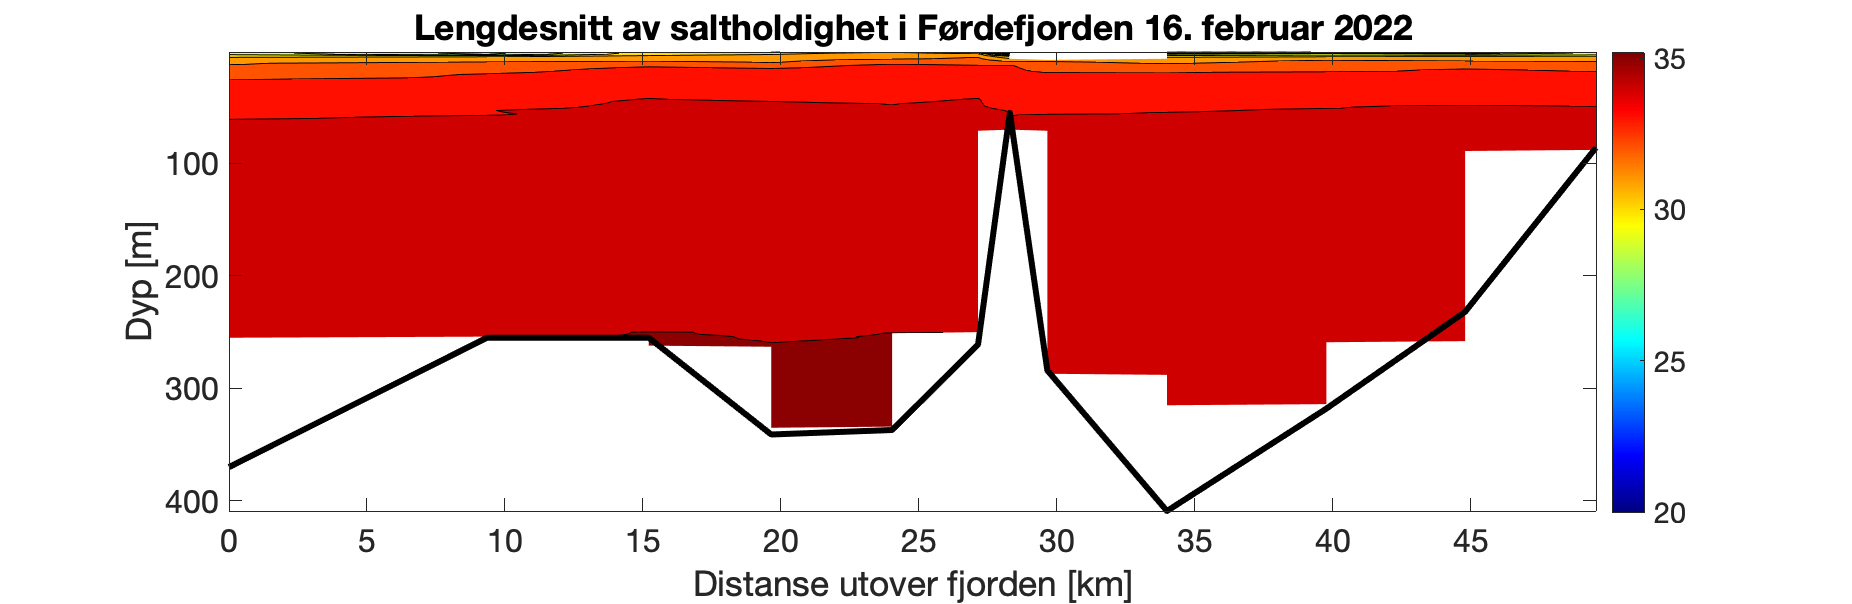 Figuren viser et histogram som illustrer variasjonen i saltholdighet (‰) i vannsøylen (0-350 meter) innover i Førdefjorden (0-50 km inn i fjorden). Fargeskalaen representerer salinitet fra 35 ‰ (rødt) til 20 ‰ (fiolett). Det er relativt jevn dybdefordeling i salinitet langs hele fjorden, med laveste verdier i de øvre 25 m. Gjennom vannsøylen dypere enn 50 m er det > 33 ‰.